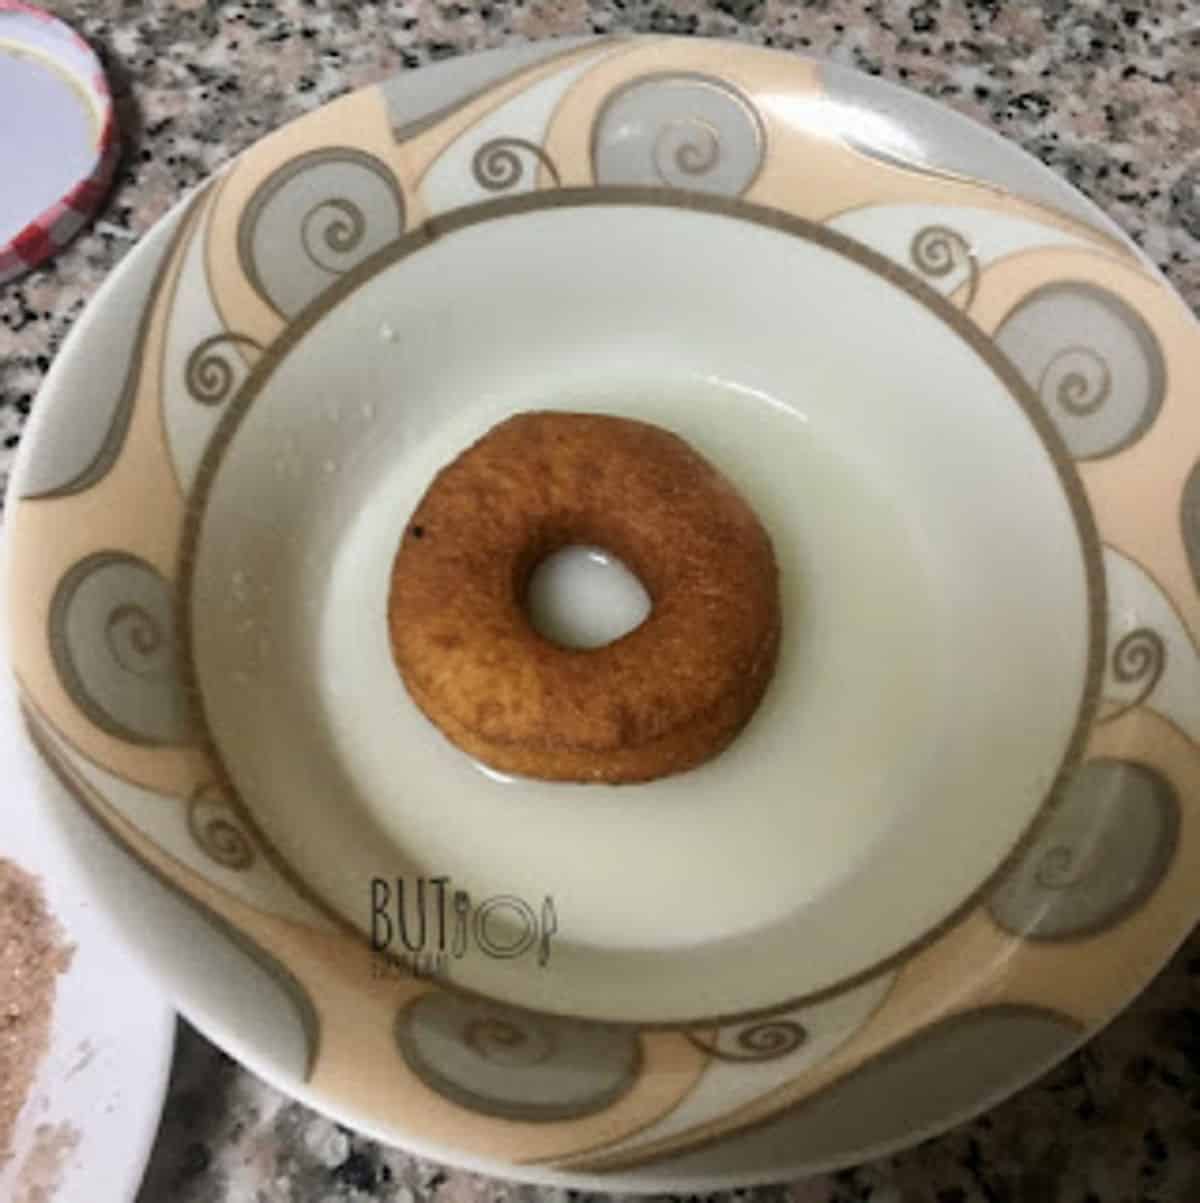 donut dunked in glaze.